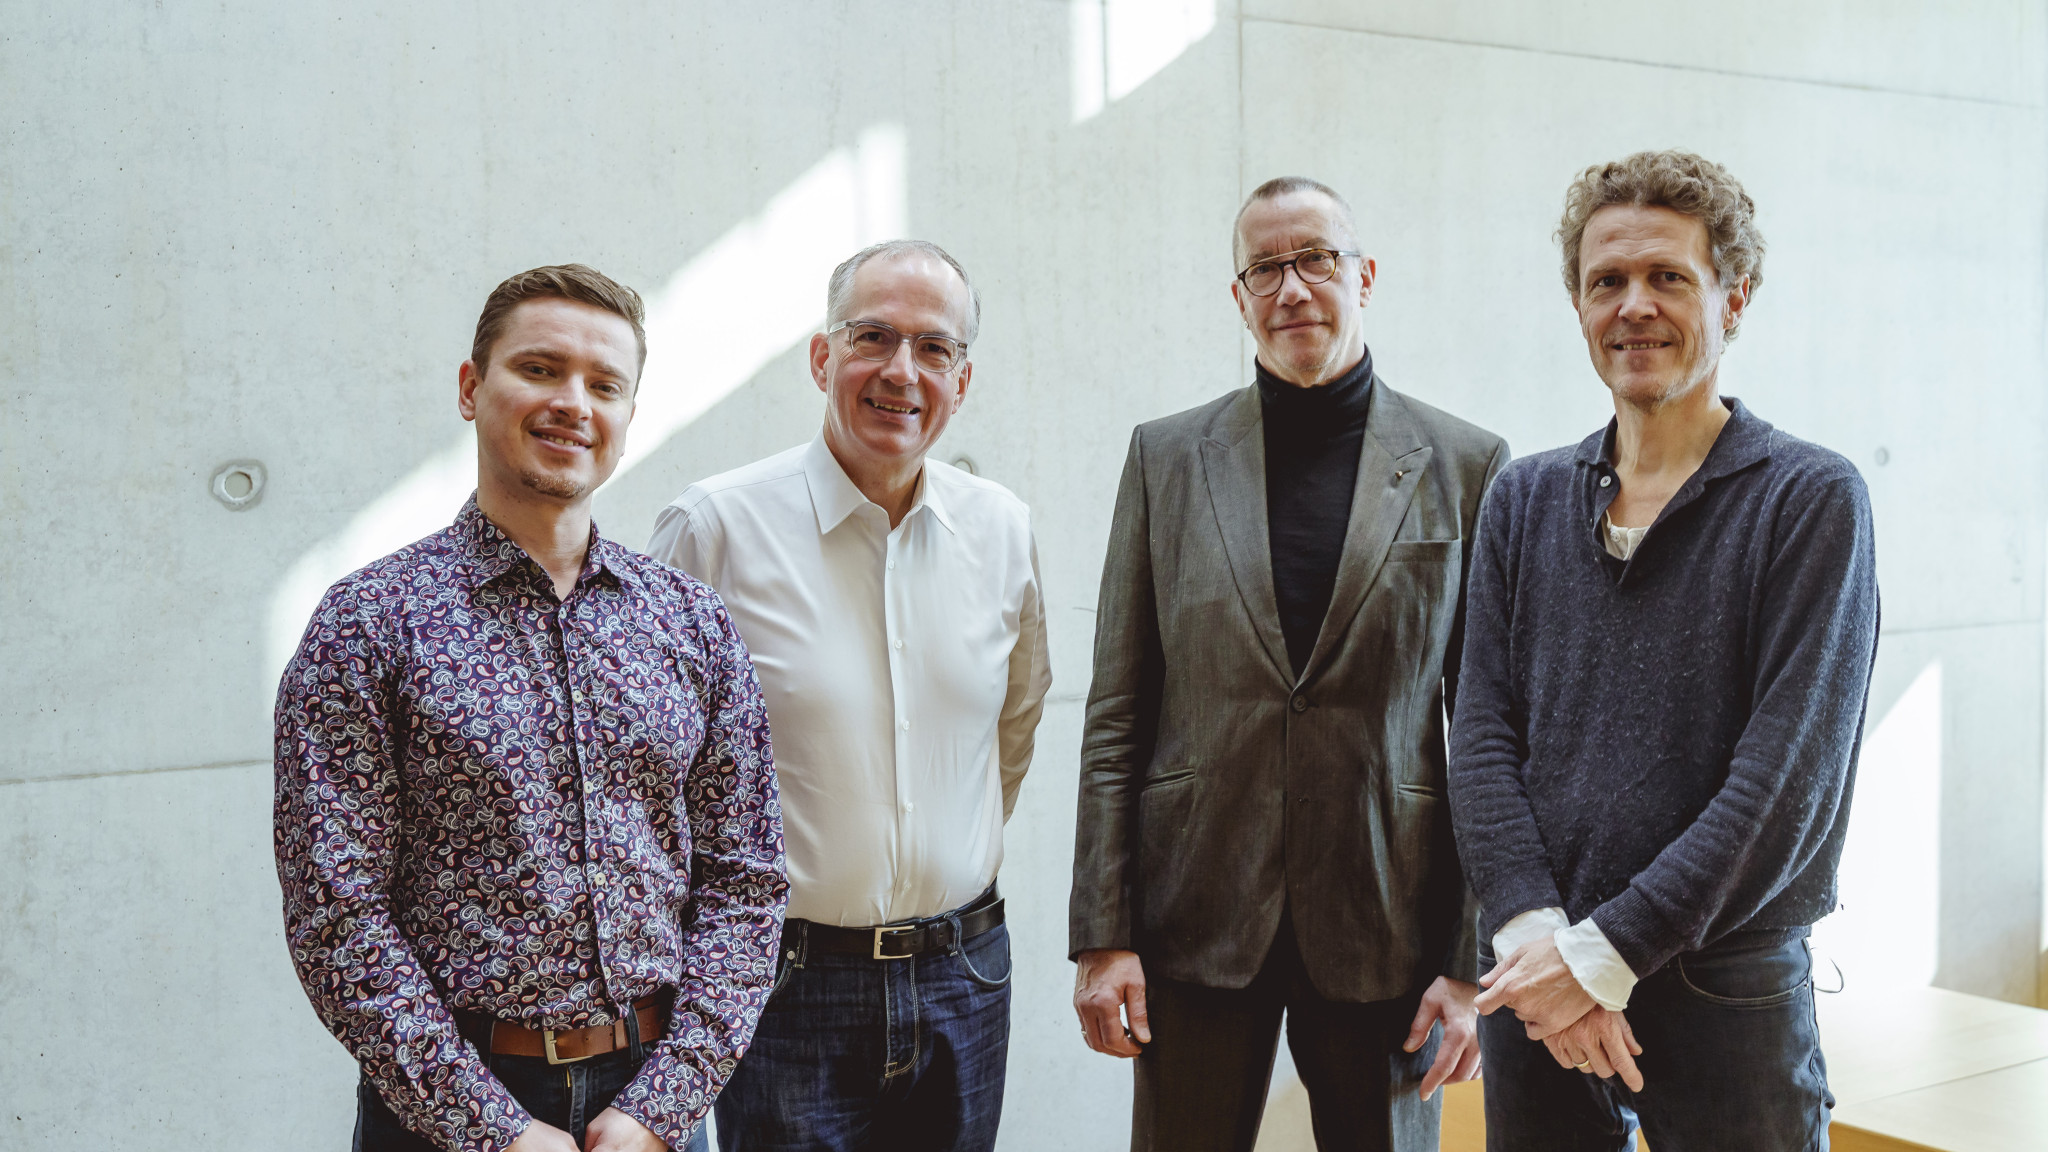 Freiburger Barockorchester und Deutsche Grammophon entschließen sich zu kreativer Partnerschaft